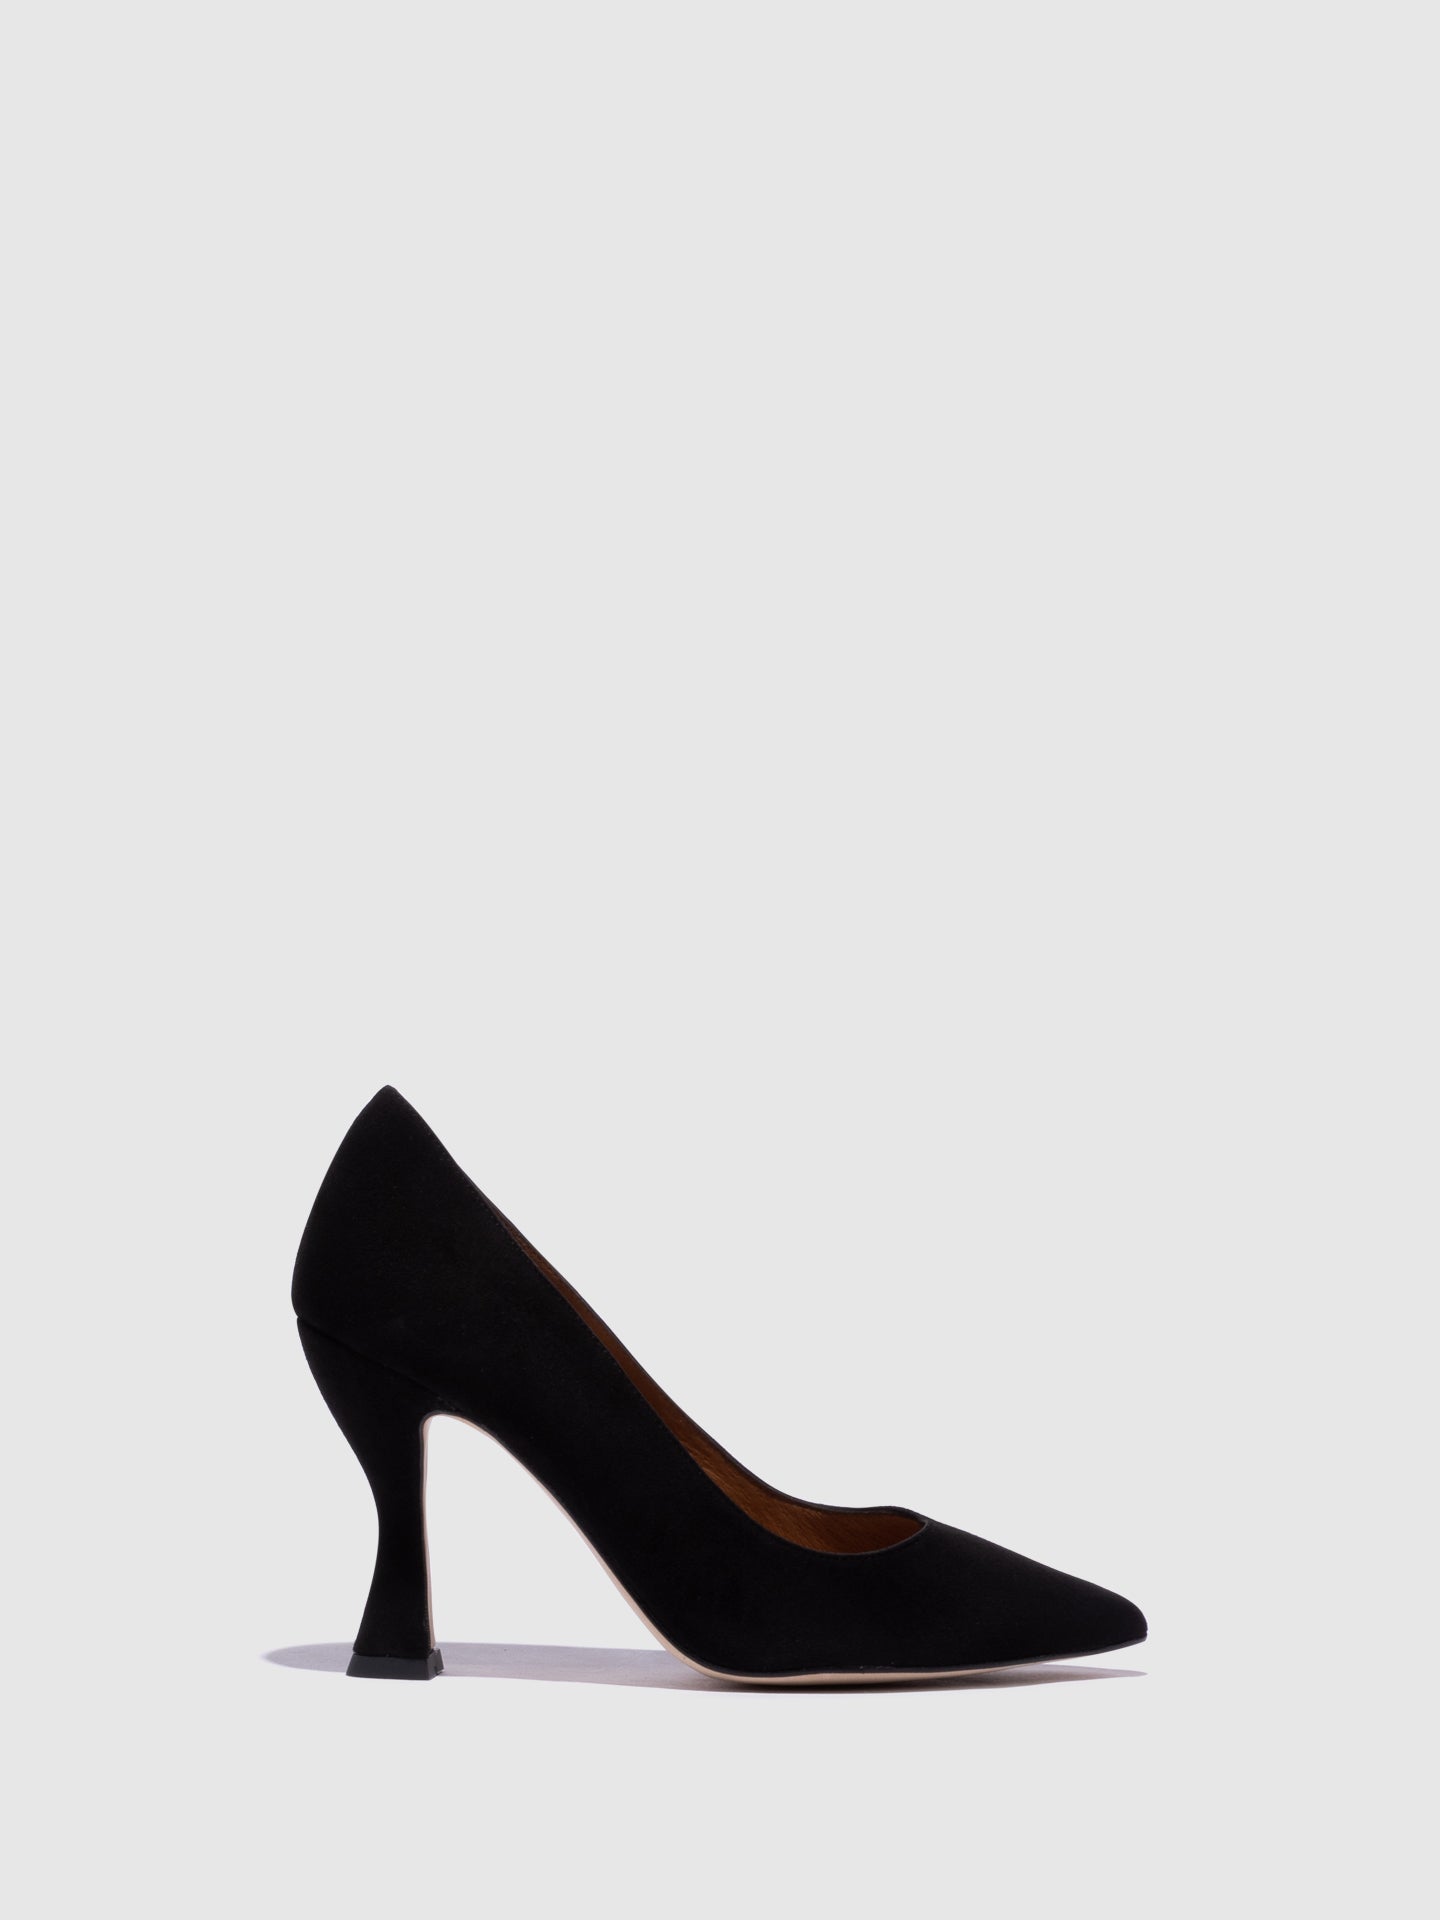 Sofia Costa Black Stiletto Shoes